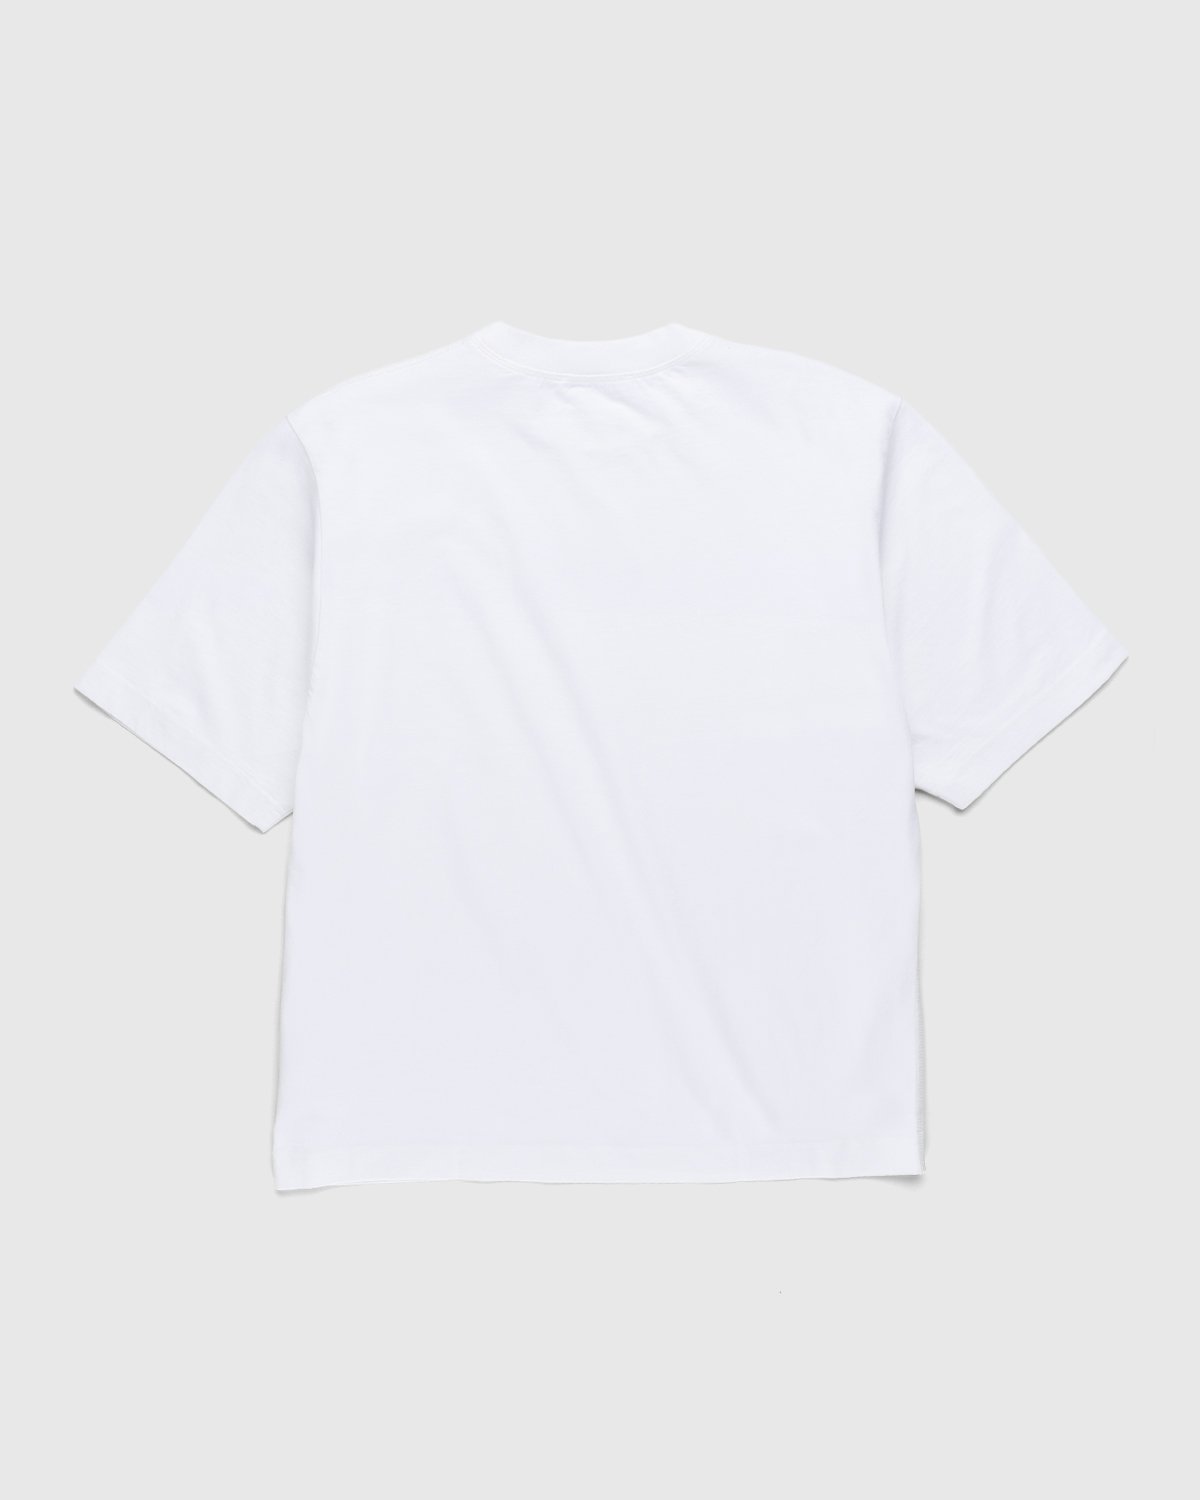 Acne Studios - Logo T-Shirt Optic White - Clothing - White - Image 2